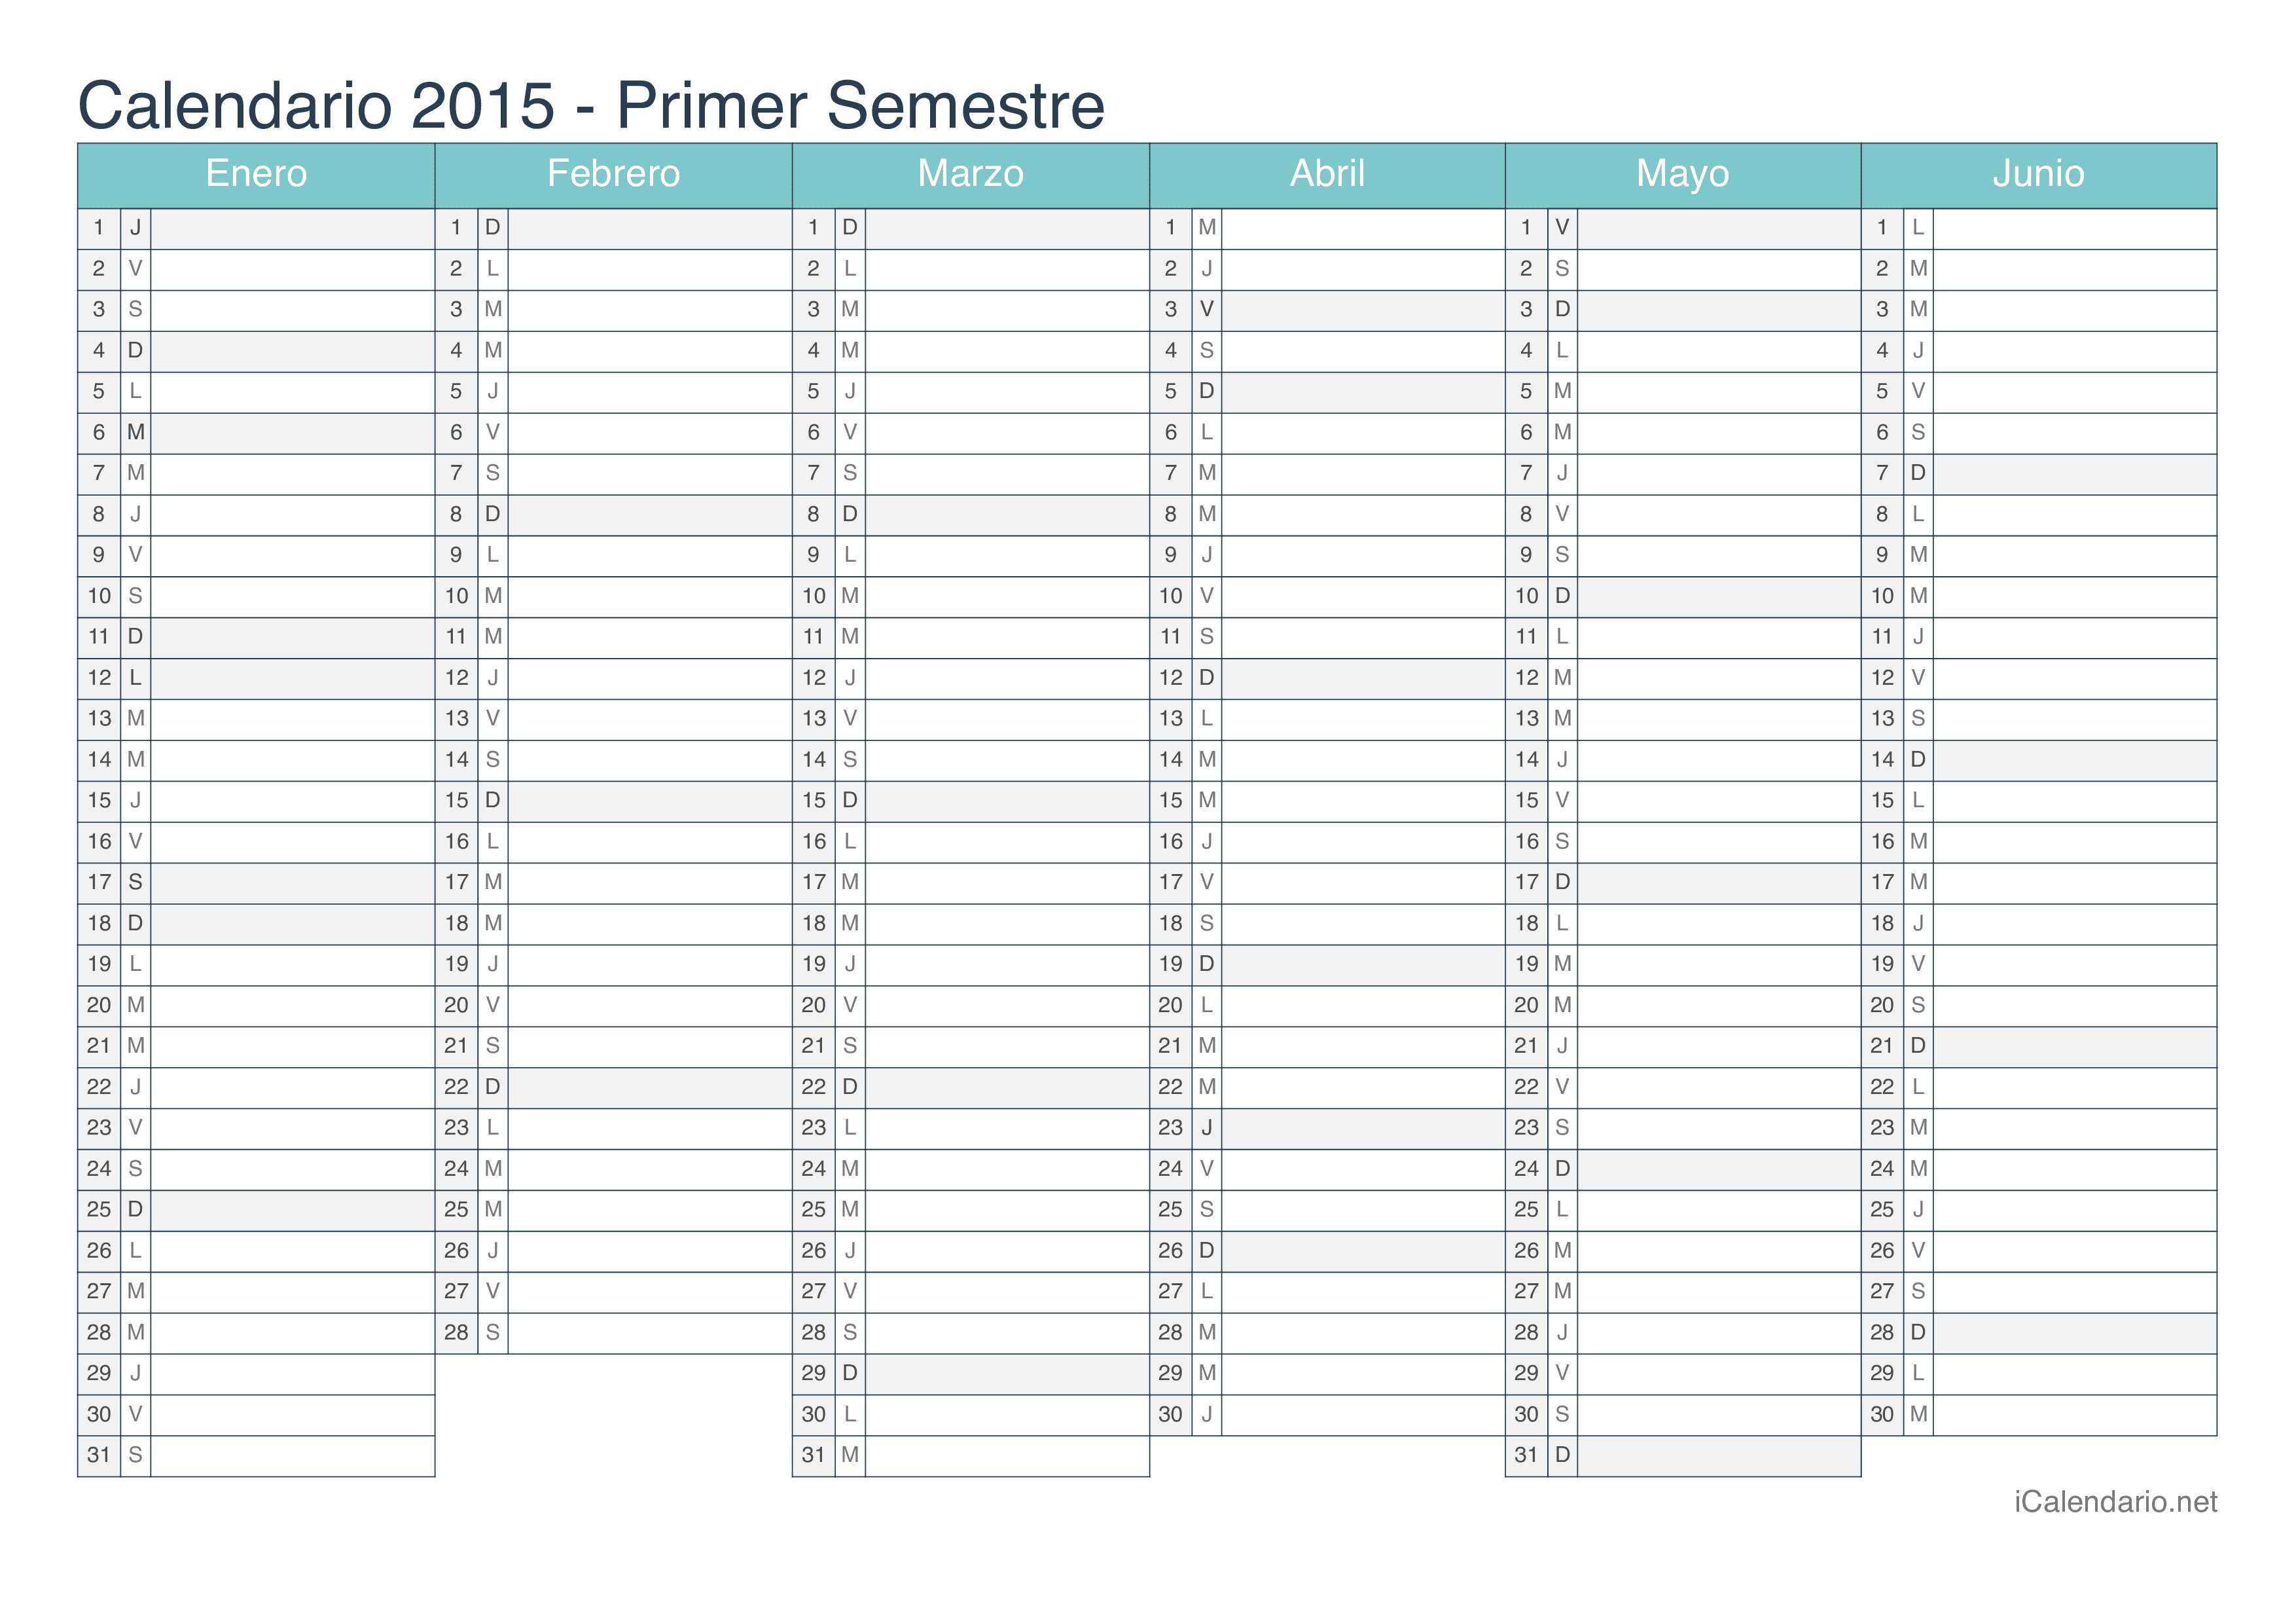 Calendario por semestre 2015 - Turquesa